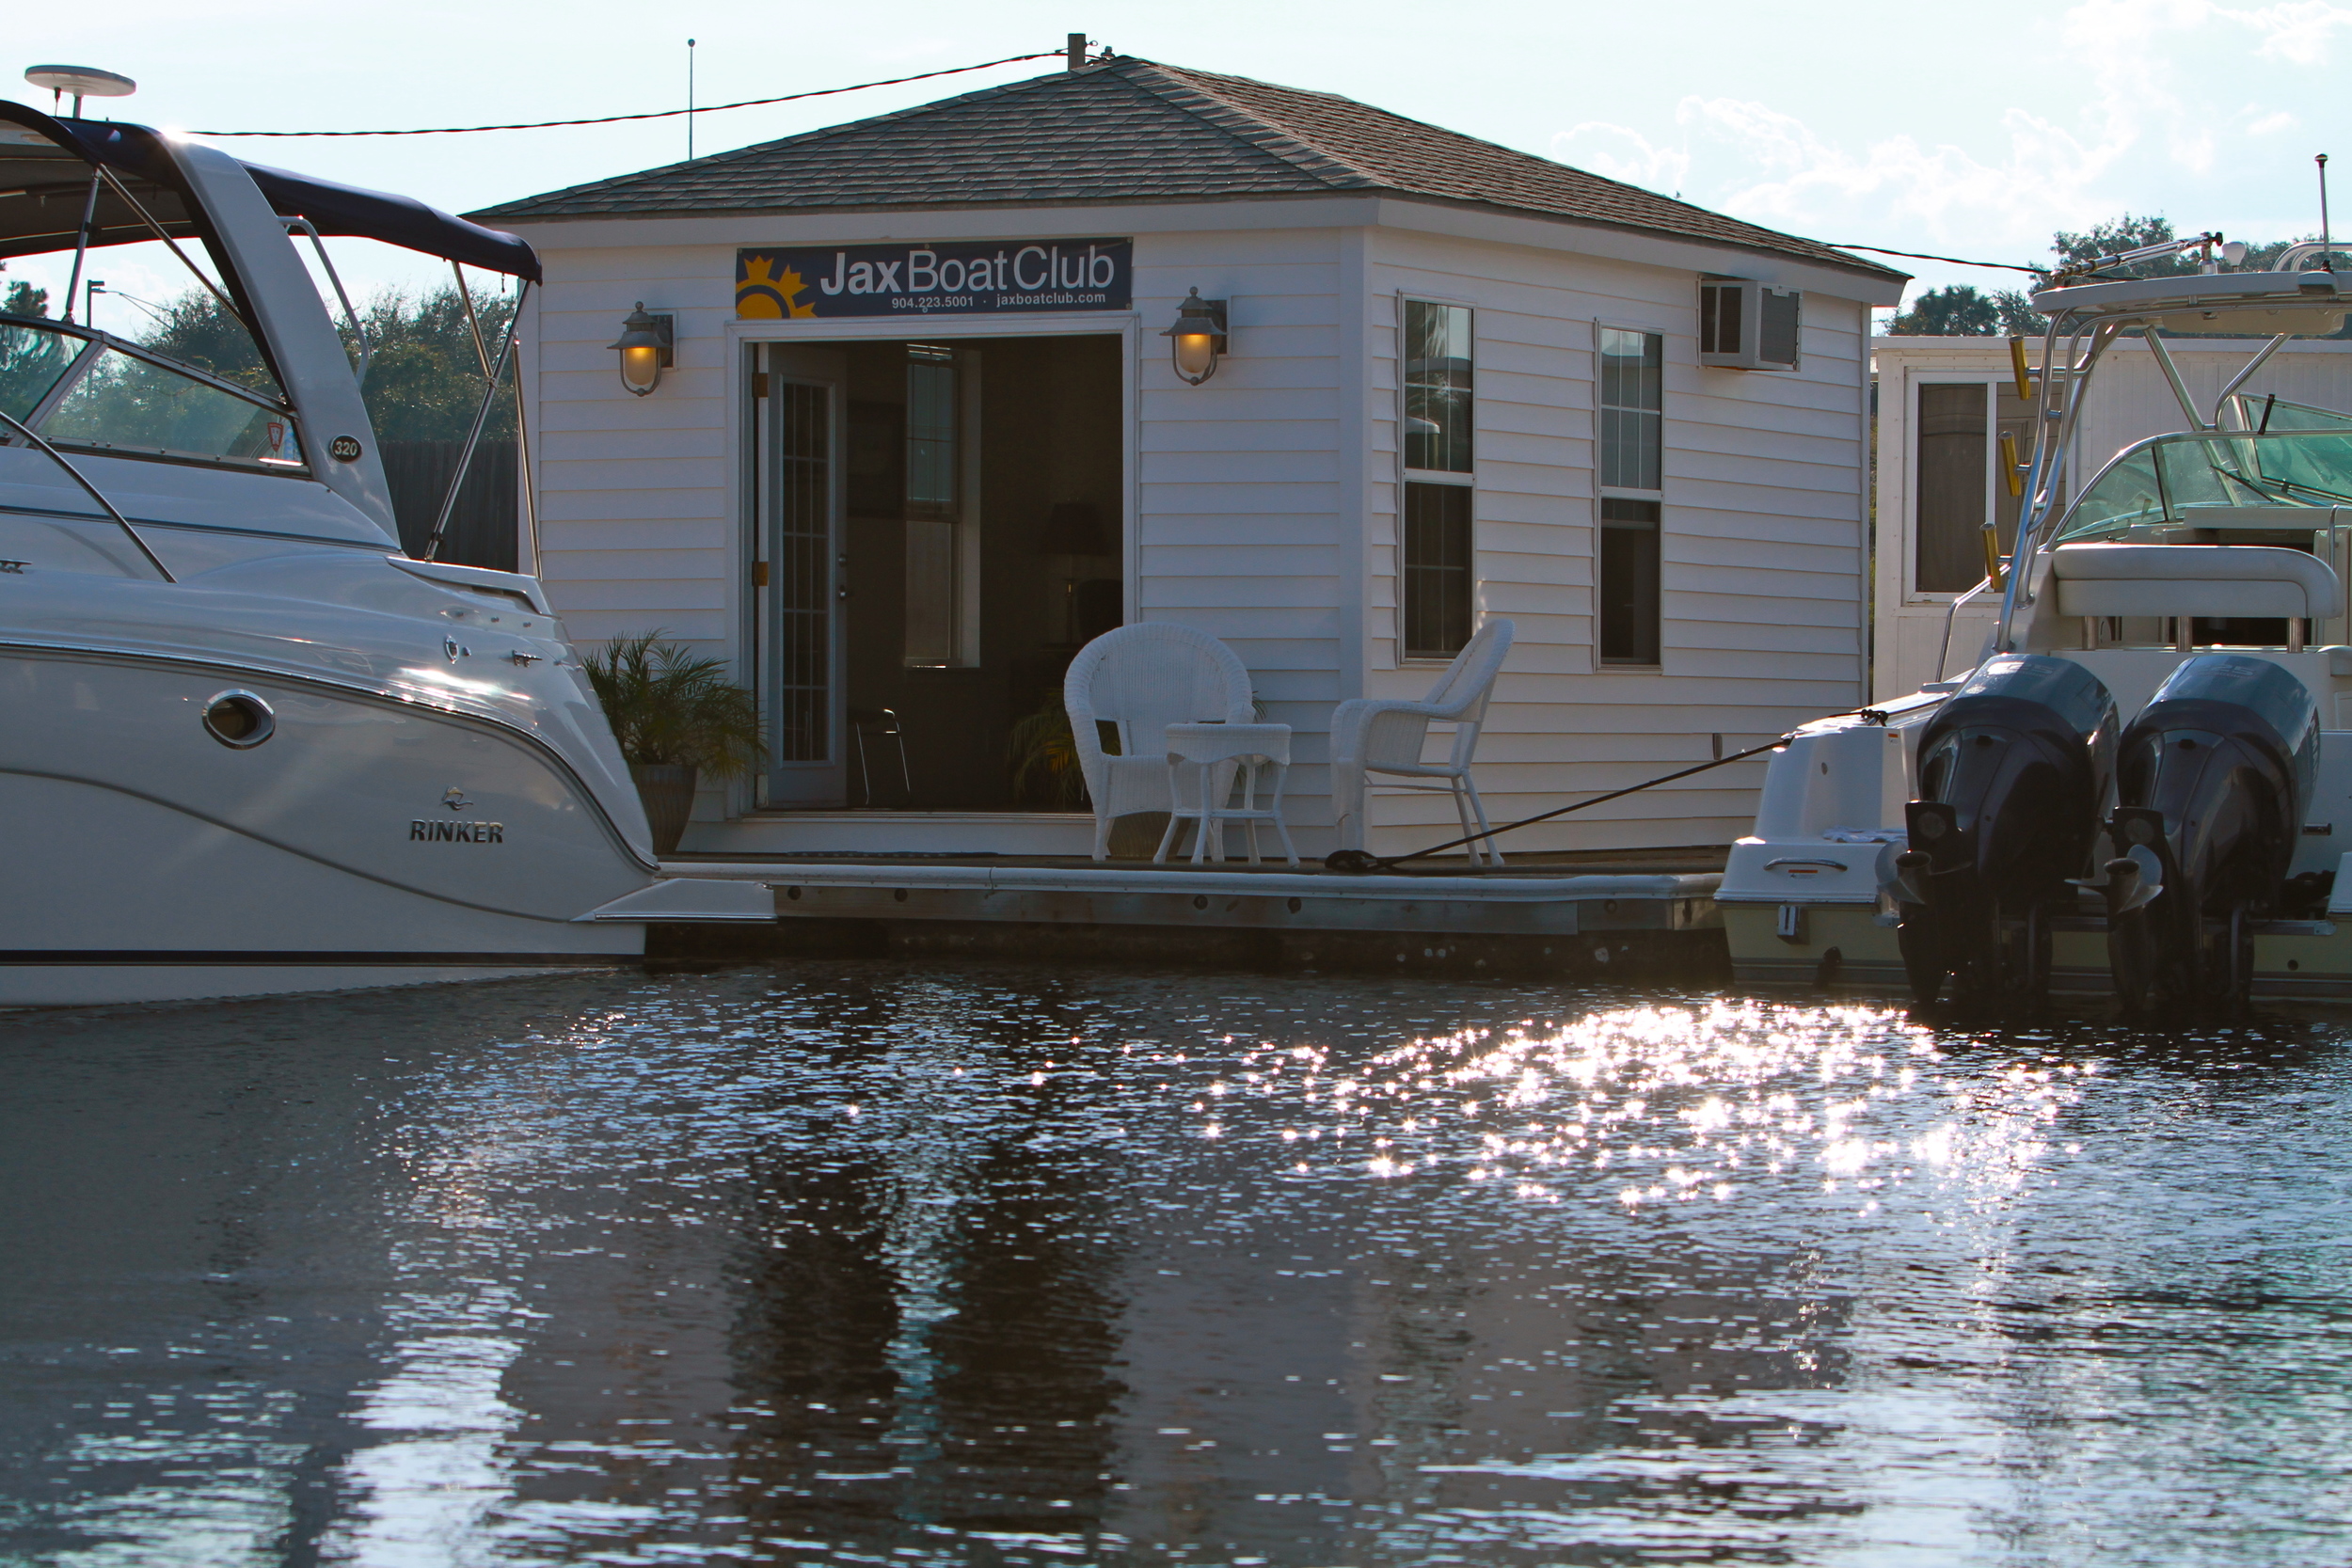 Jax Boat Club office